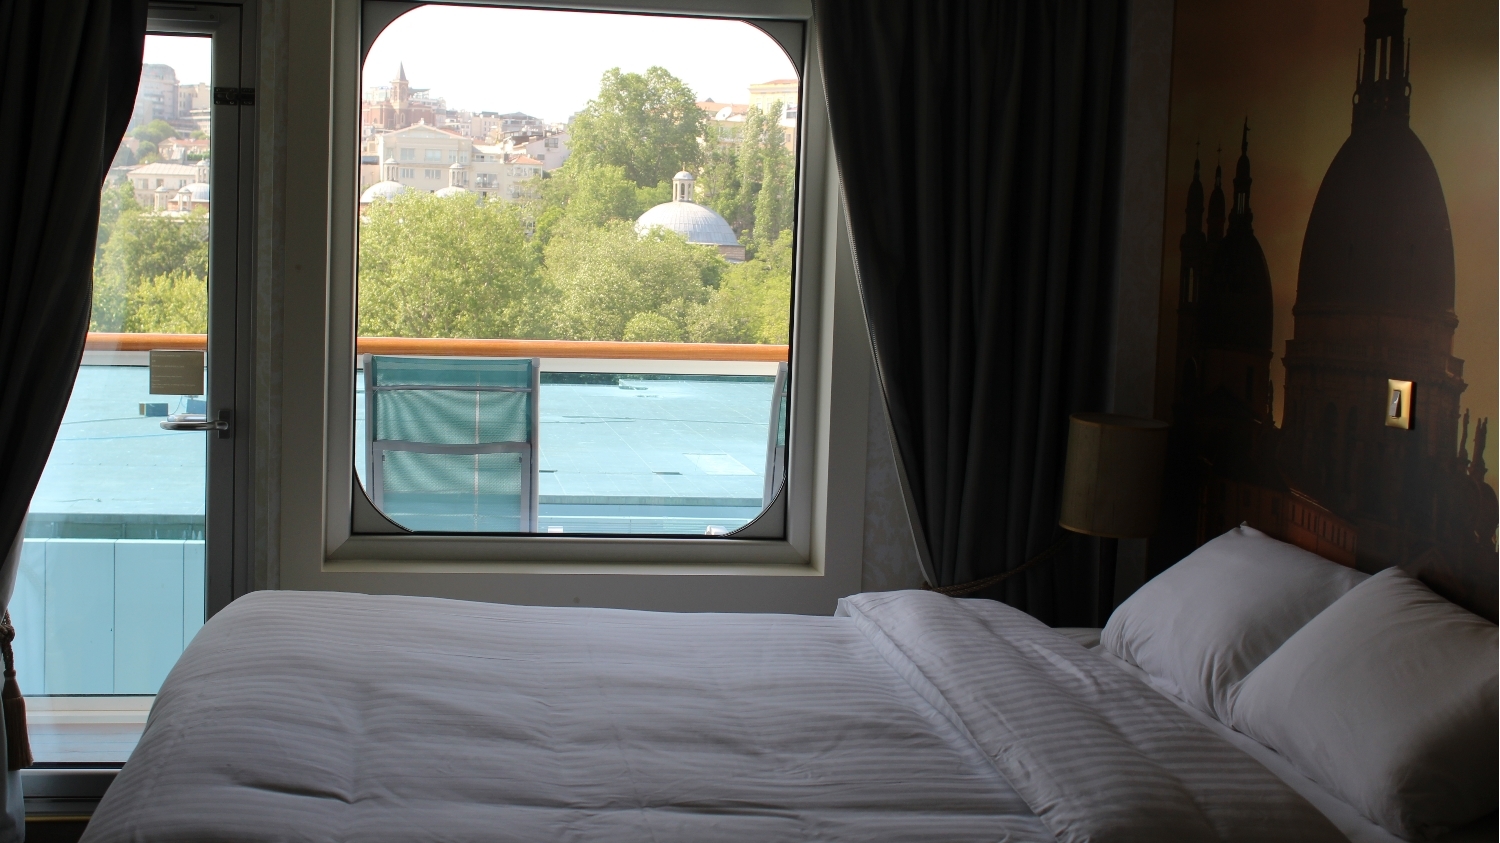 Nuestro camarote del Costa Venezia contó con todas las comodidades posibles y un balcón espectacular.